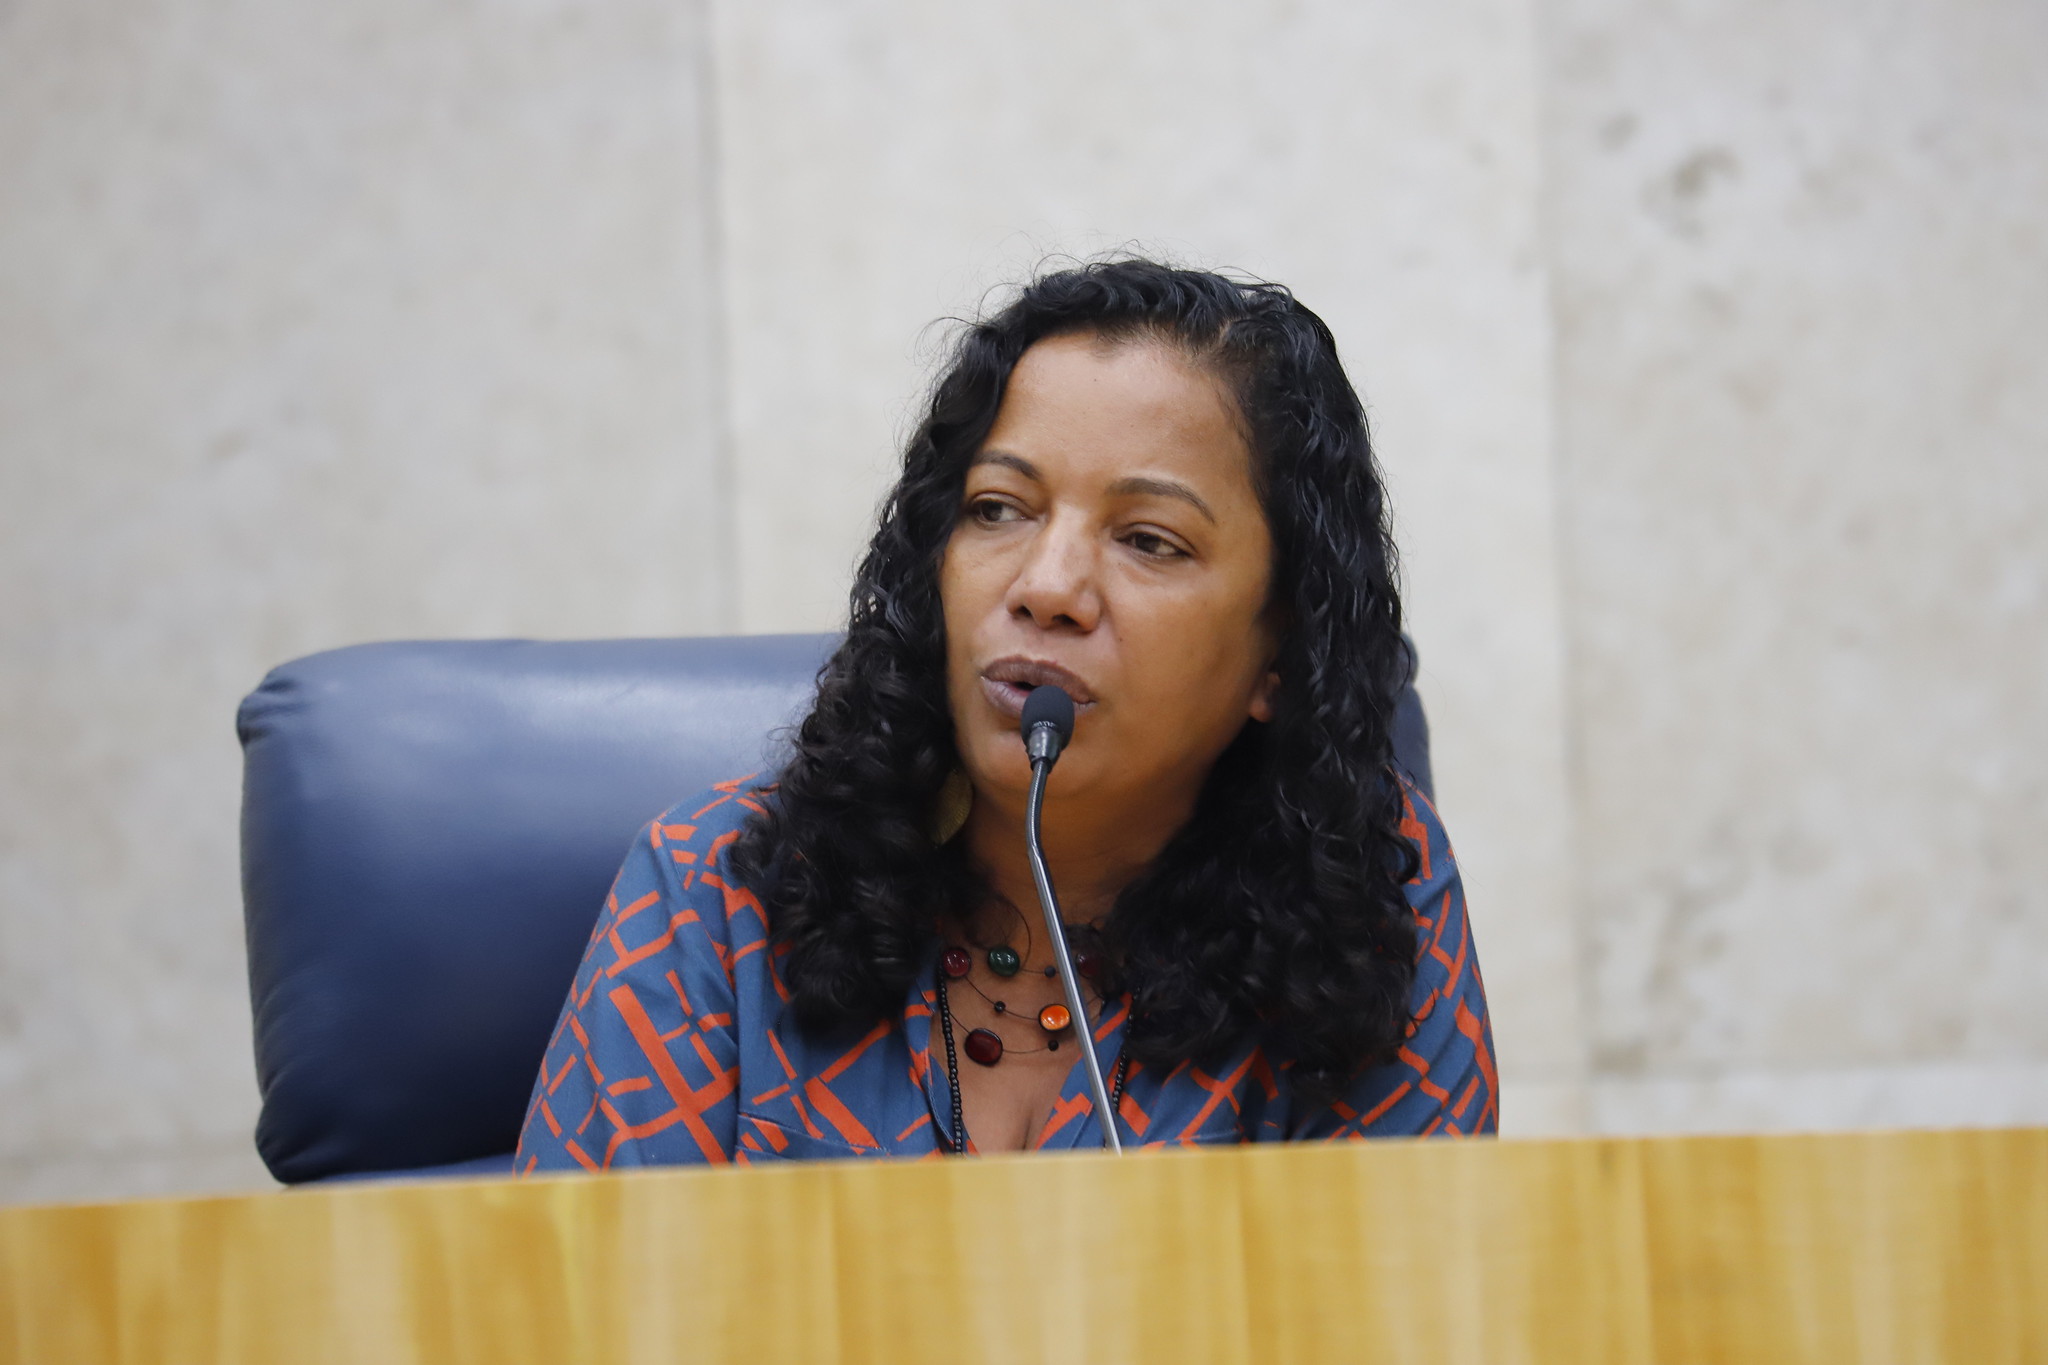 Não há democracia com racismo: nota pública contra ataques racistas à assessoria da vereadora Jussara Basso